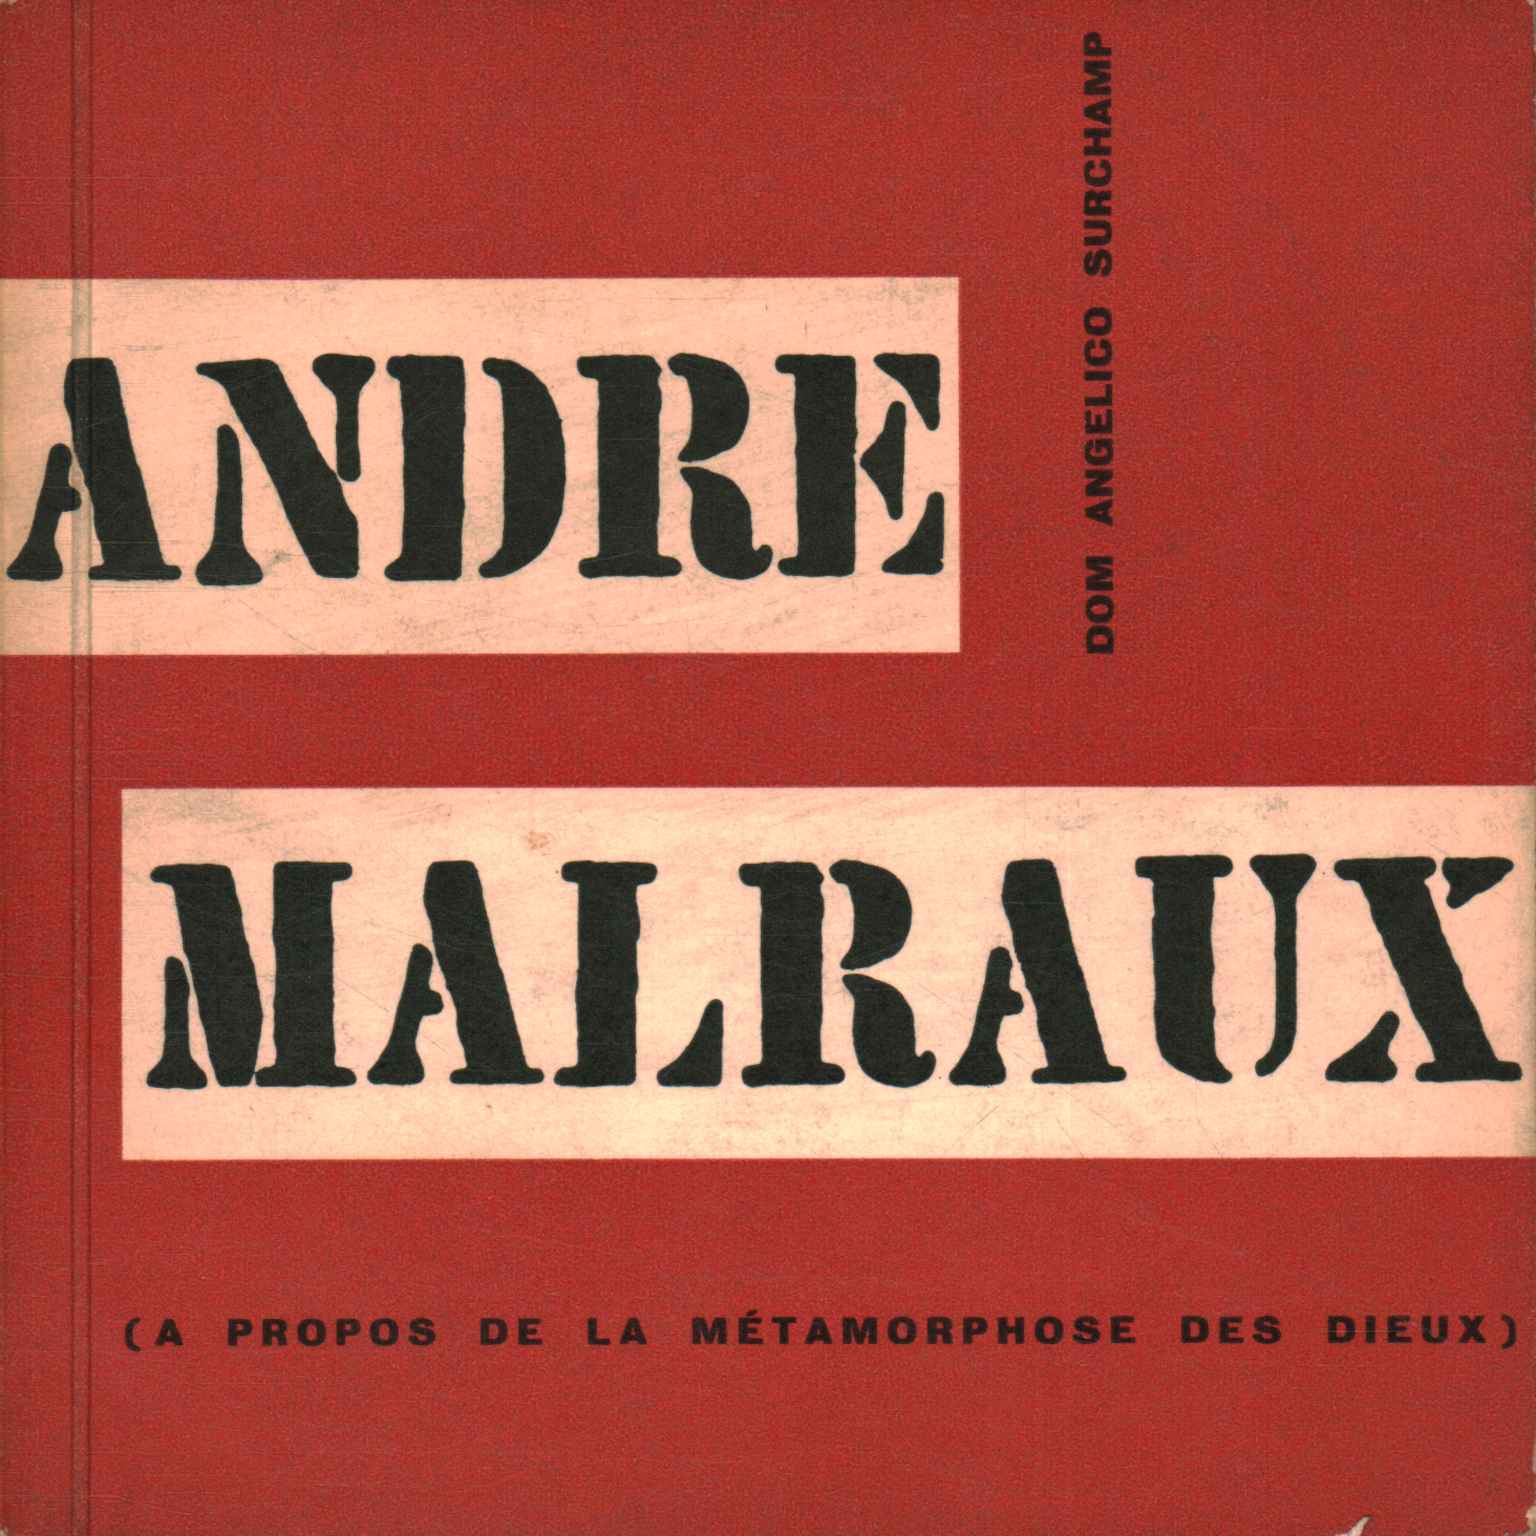 André Malraux (A propos de la metamorp)